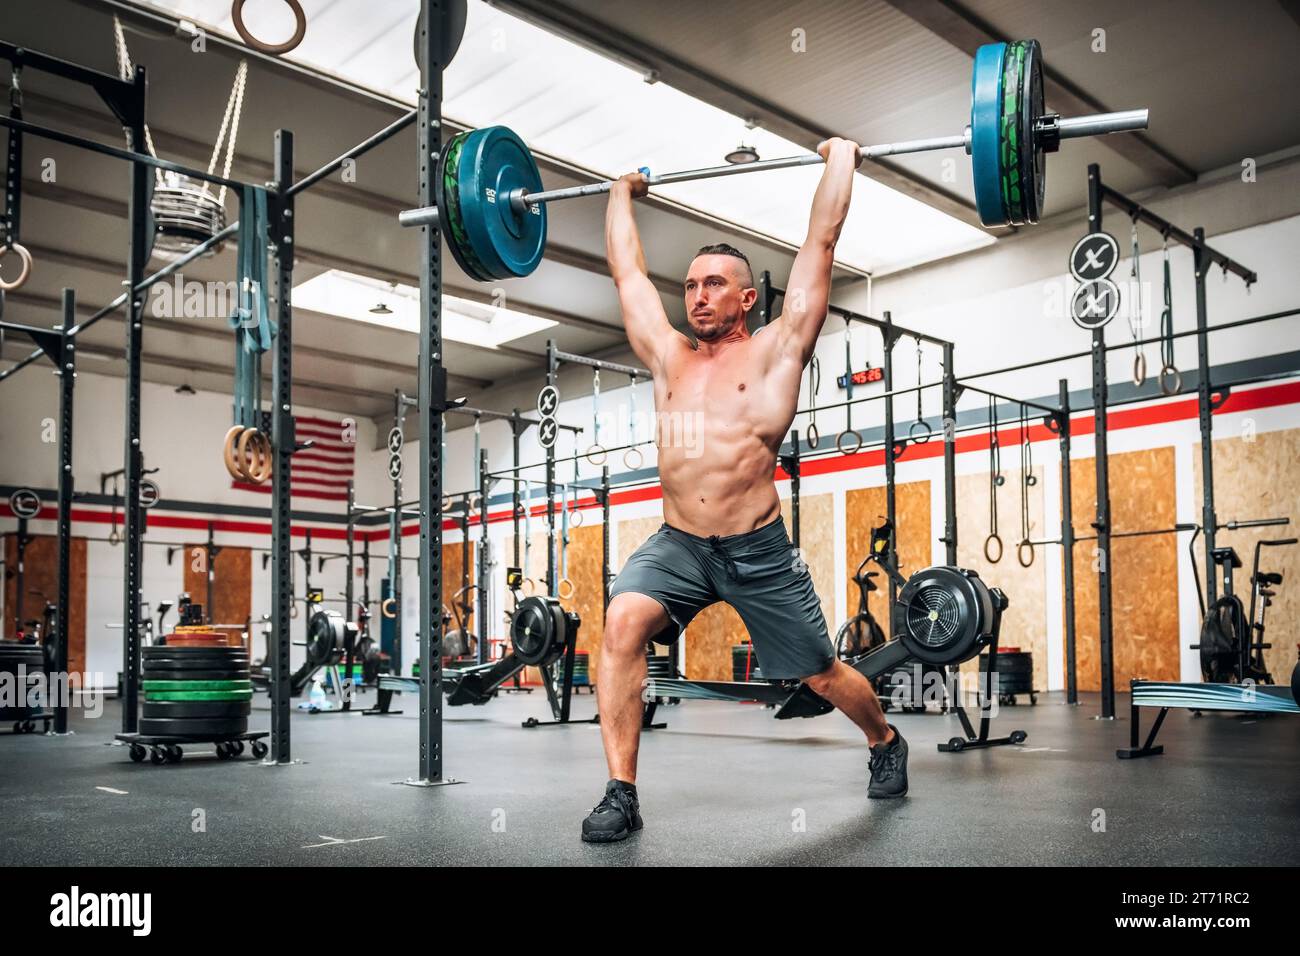 Ganzkörper eines starken männlichen Athleten, der während des Gewichtheben-Trainings im Fitnessstudio saubere und ruckartige Übungen durchführt Stockfoto